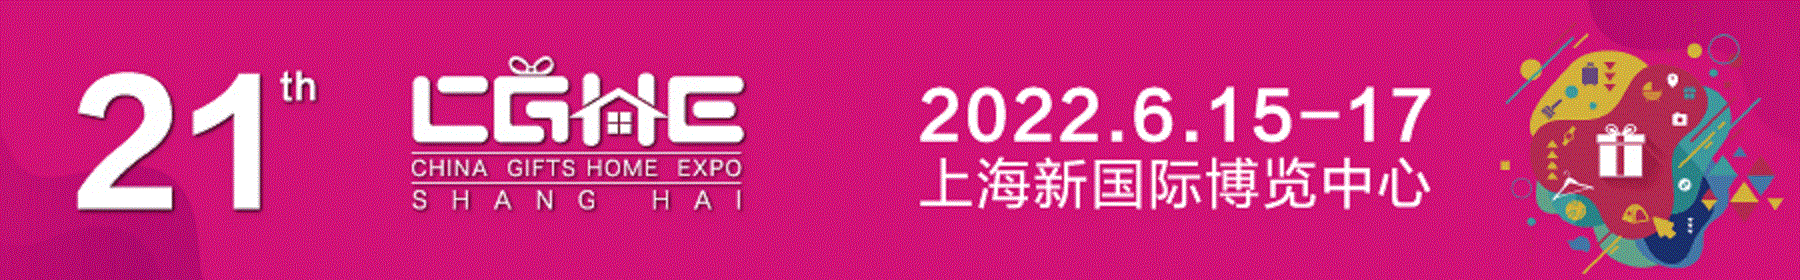 2022上海礼品展-2022中国礼品展览会 2022上海礼品展，2022中国礼品展览会，2022中国上海礼品展会